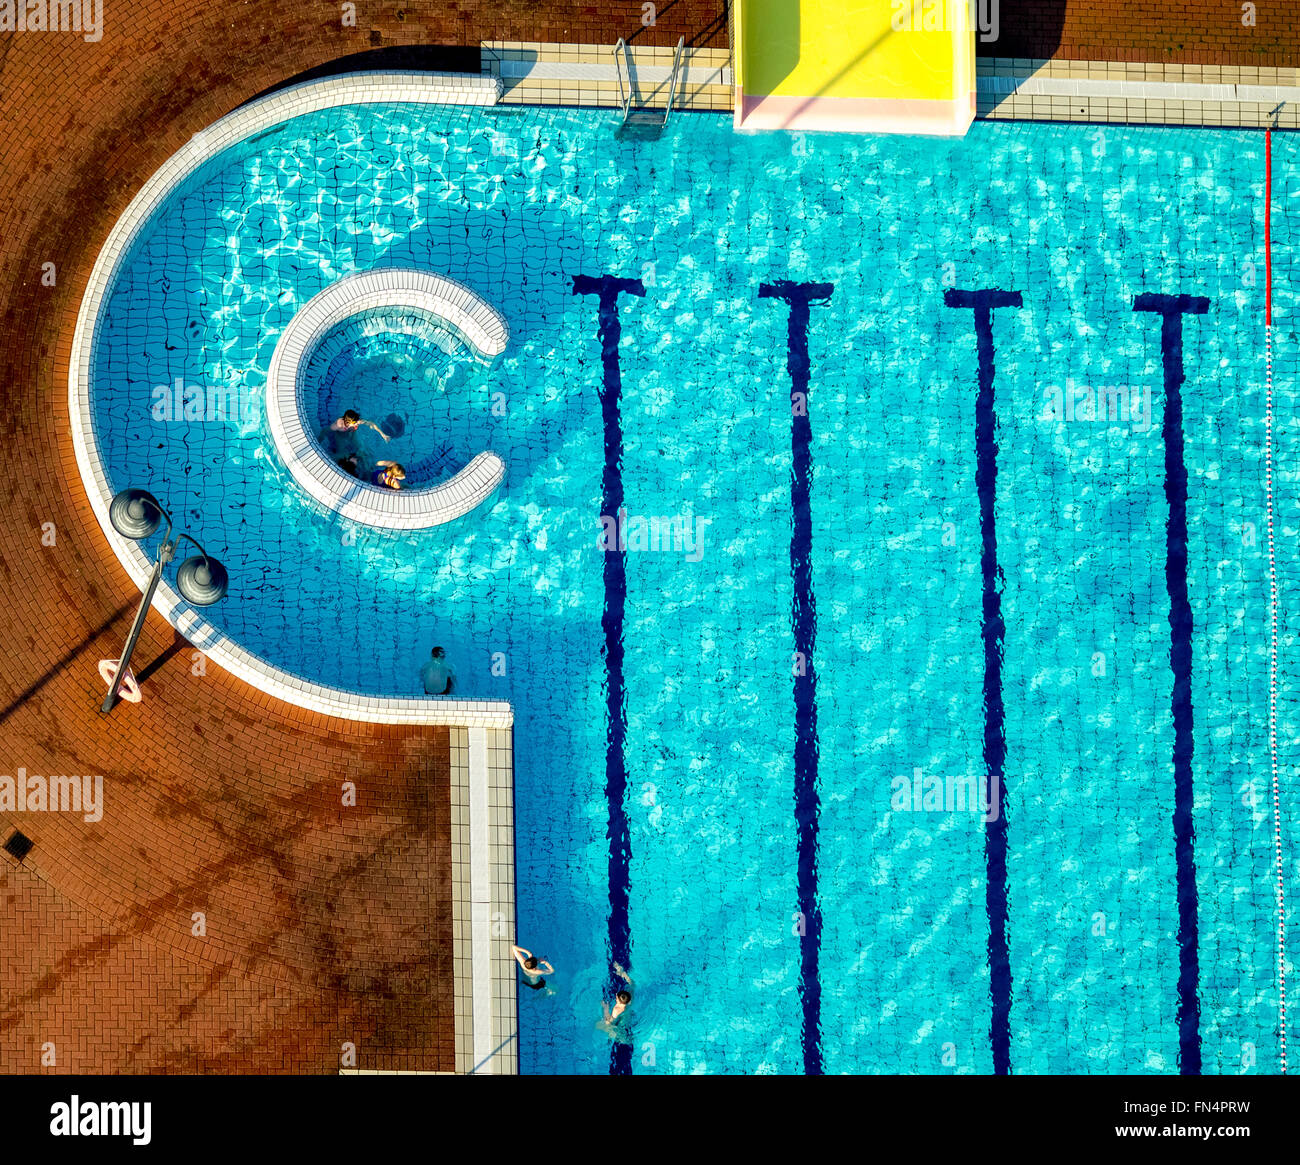 Vista aerea, Embricana Leisure u. Sport GmbH, nuoto, piscina lap pool, Emmerich, regione del Basso Reno, Foto Stock